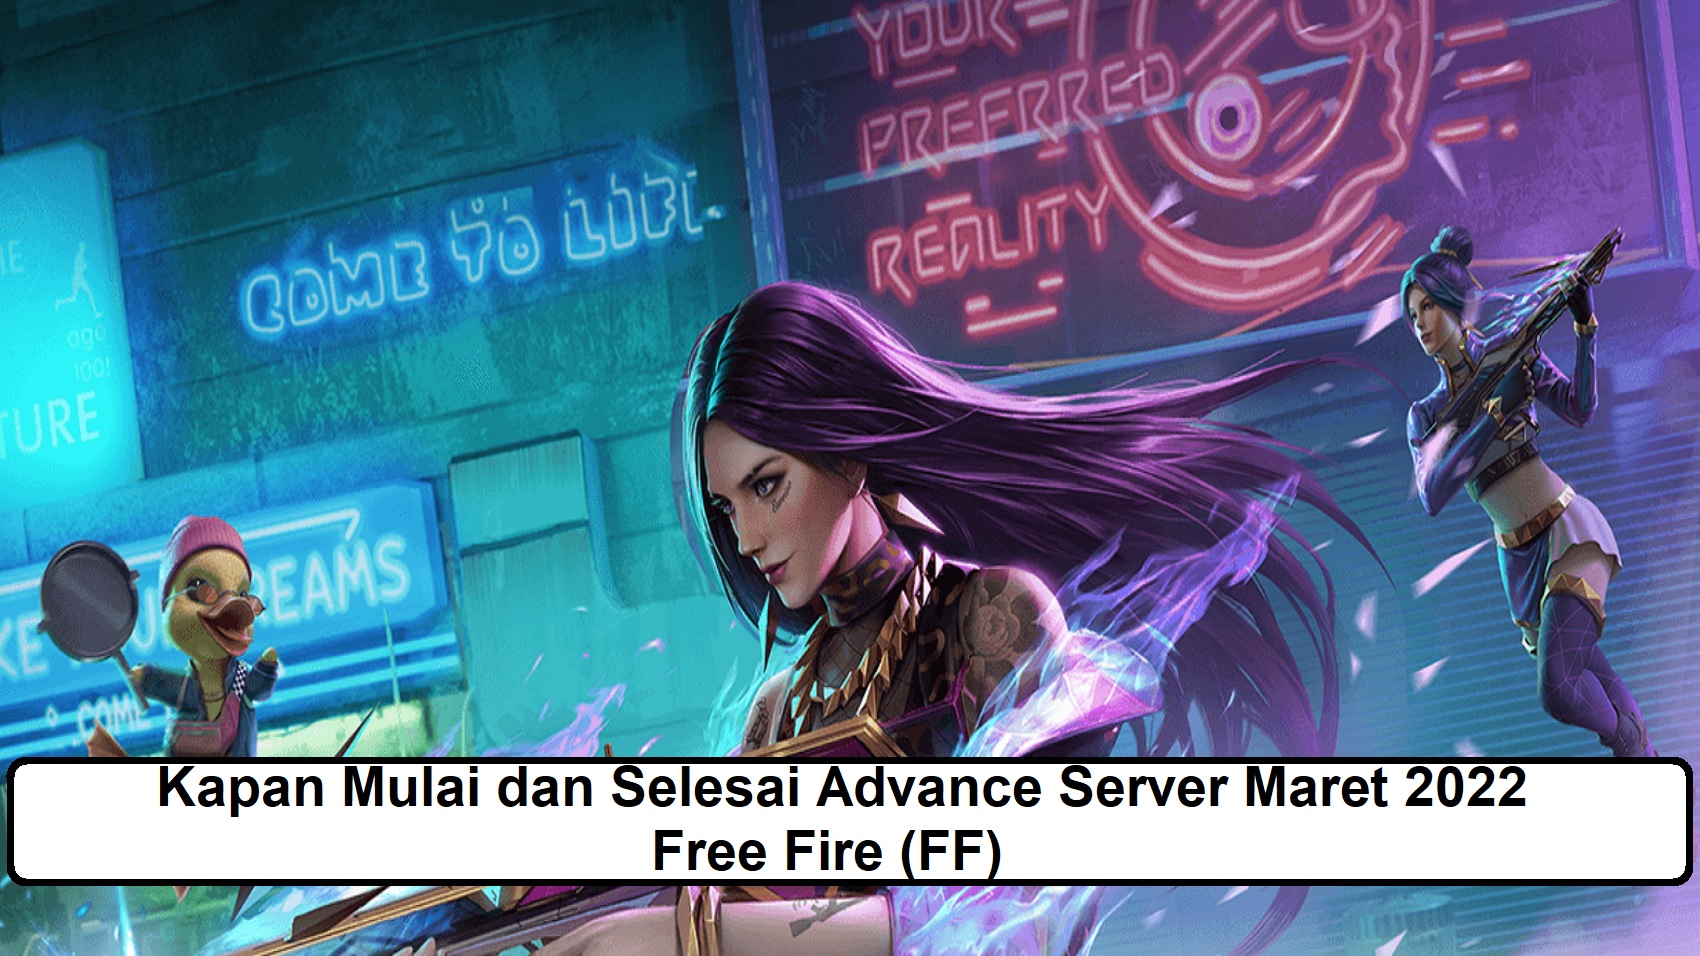 Kapan Mulai dan Selesai Advance Server Maret 2022 Free Fire (FF)?